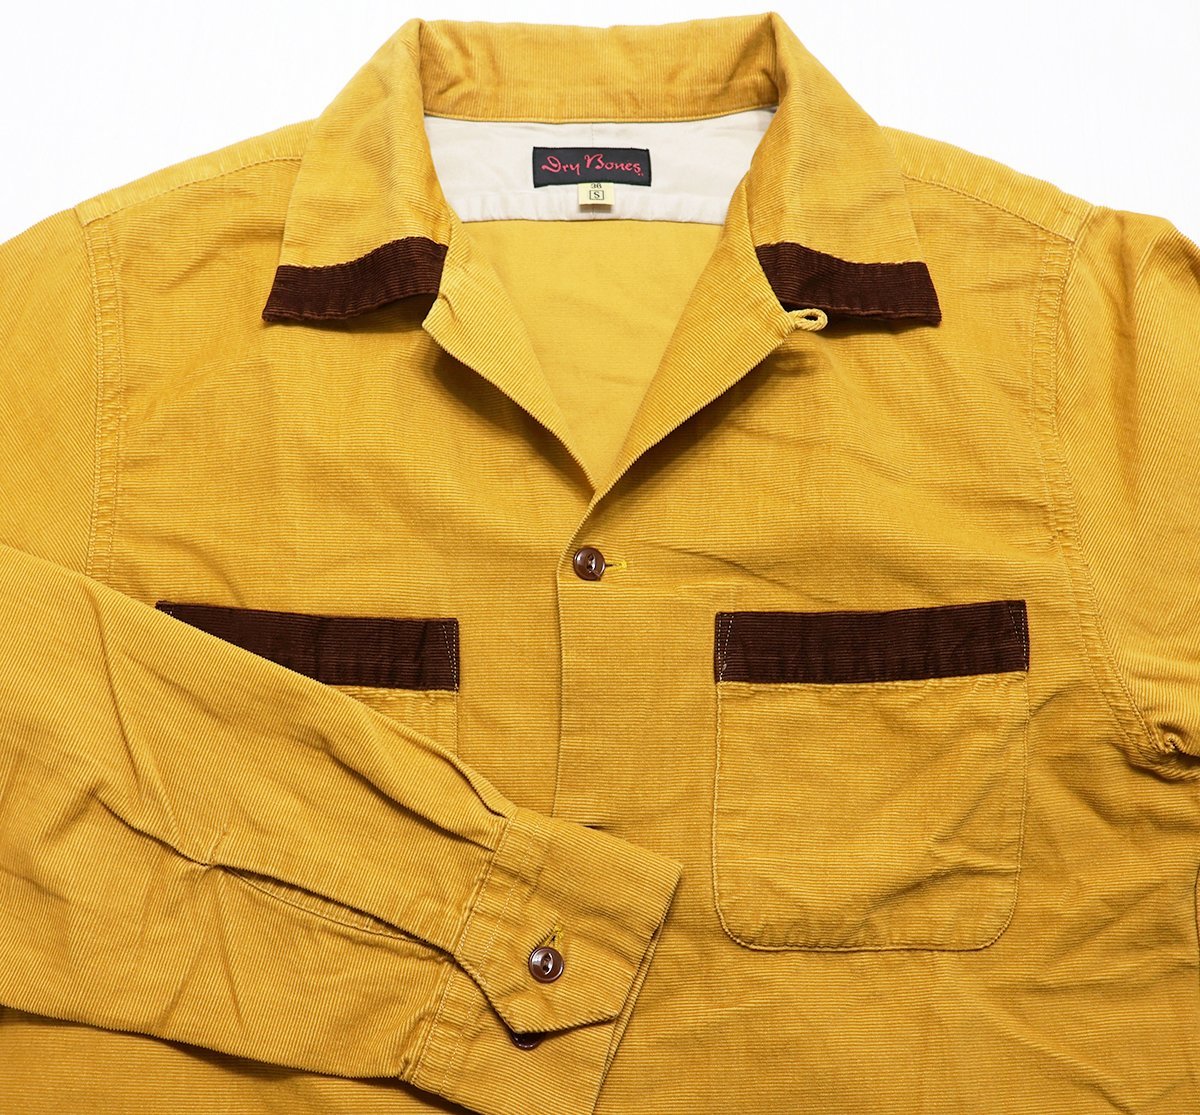 DryBones (ドライボーンズ) Corduroy Shirt / コーデュロイシャツ マスタード size 36(S)_画像3